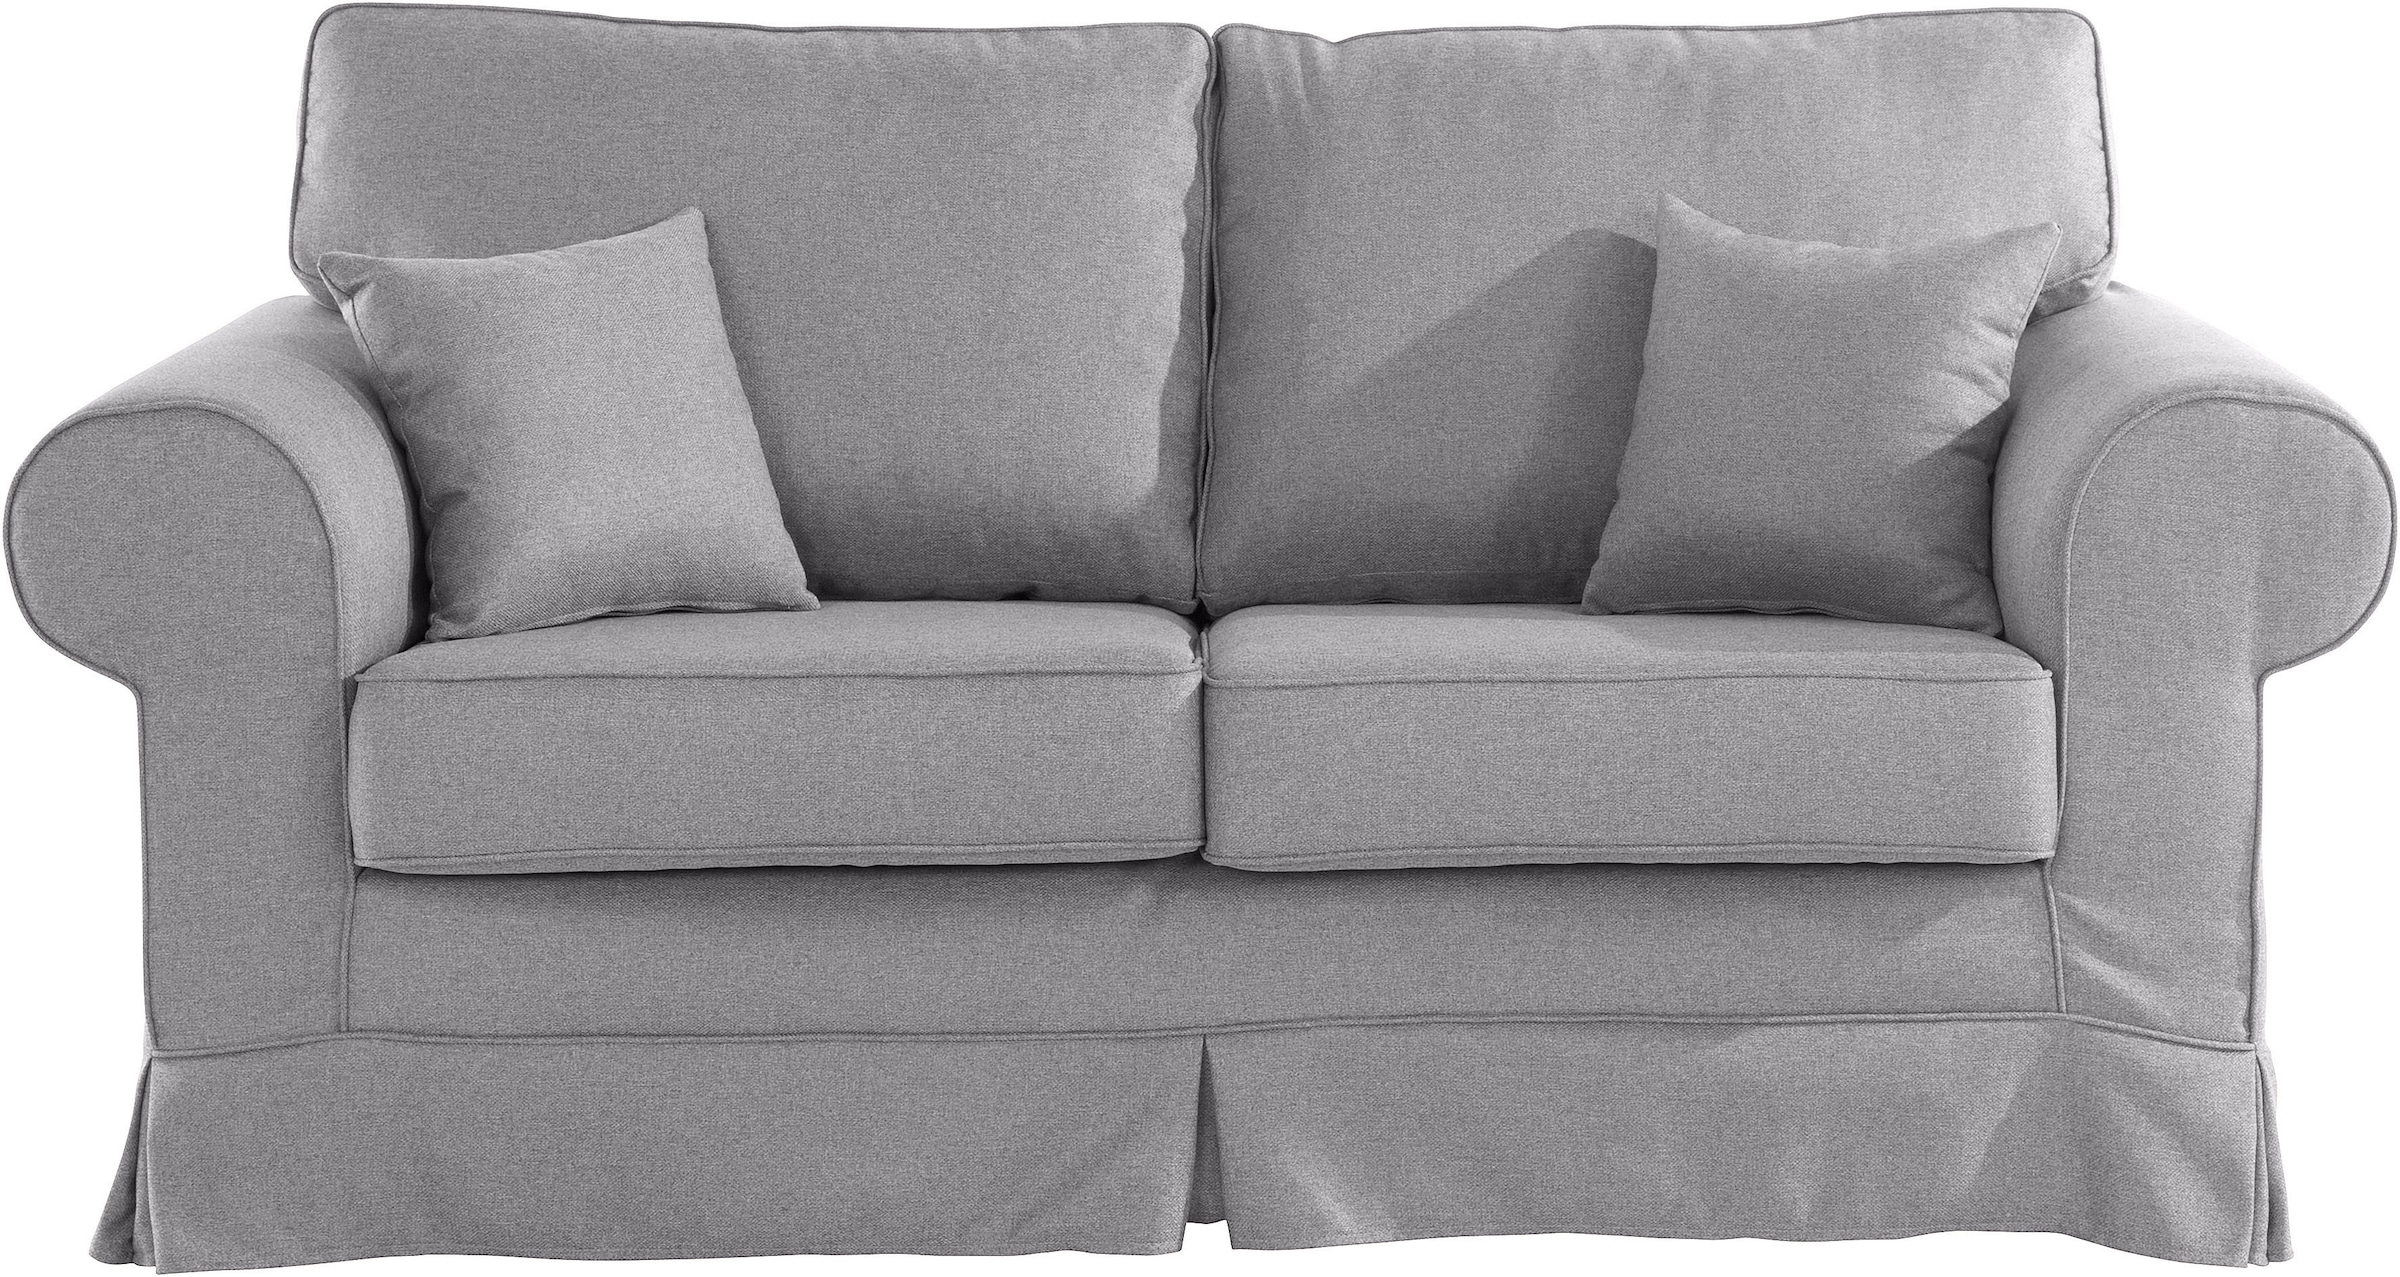 Trendige Stretch Couchbezug online kaufen